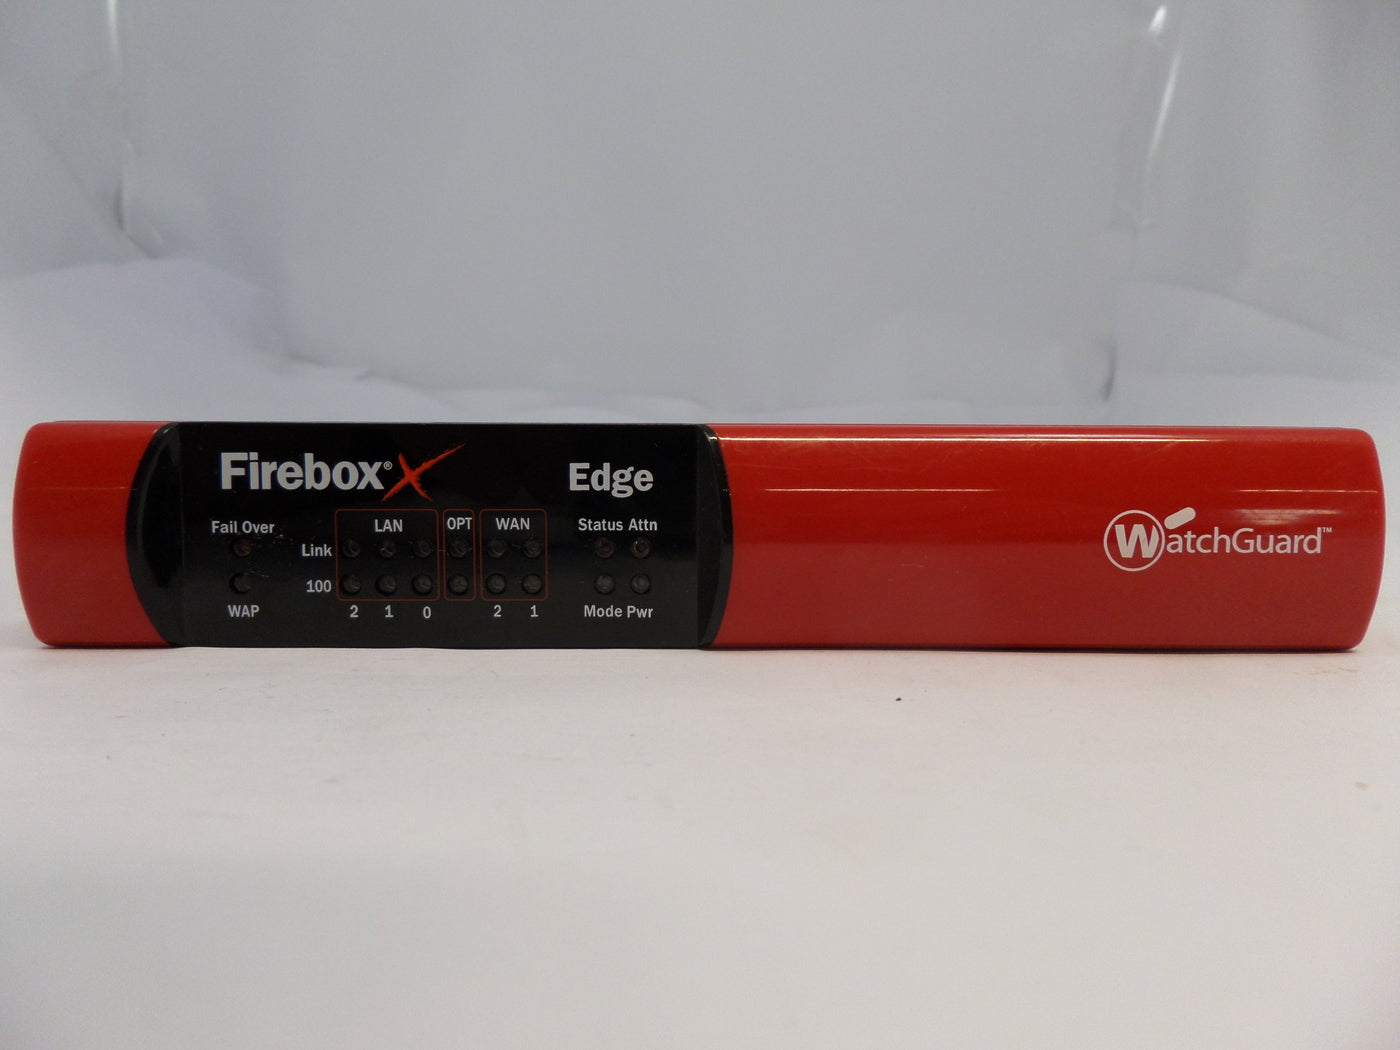 PR26315_X10e_WatchGuard XP2E6 Firebox X10e Edge - Image3